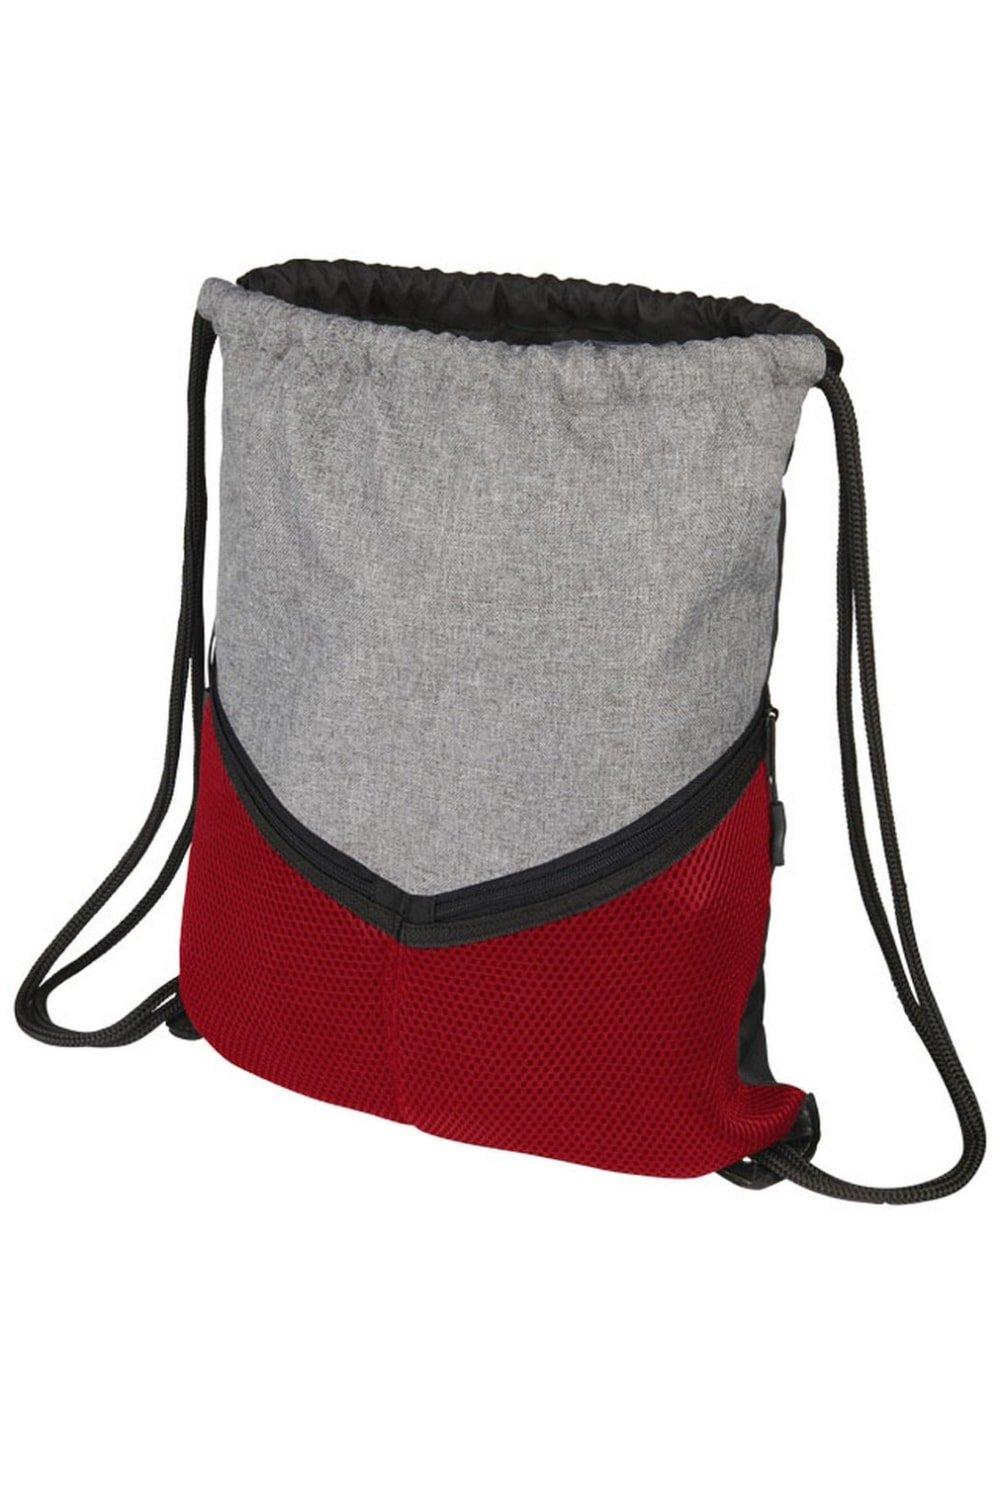 Спортивный рюкзак Voyager со шнурком Bullet, красный водонепроницаемый и износостойкий рюкзак из ткани оксфорд с двумя боковыми сетчатыми карманами